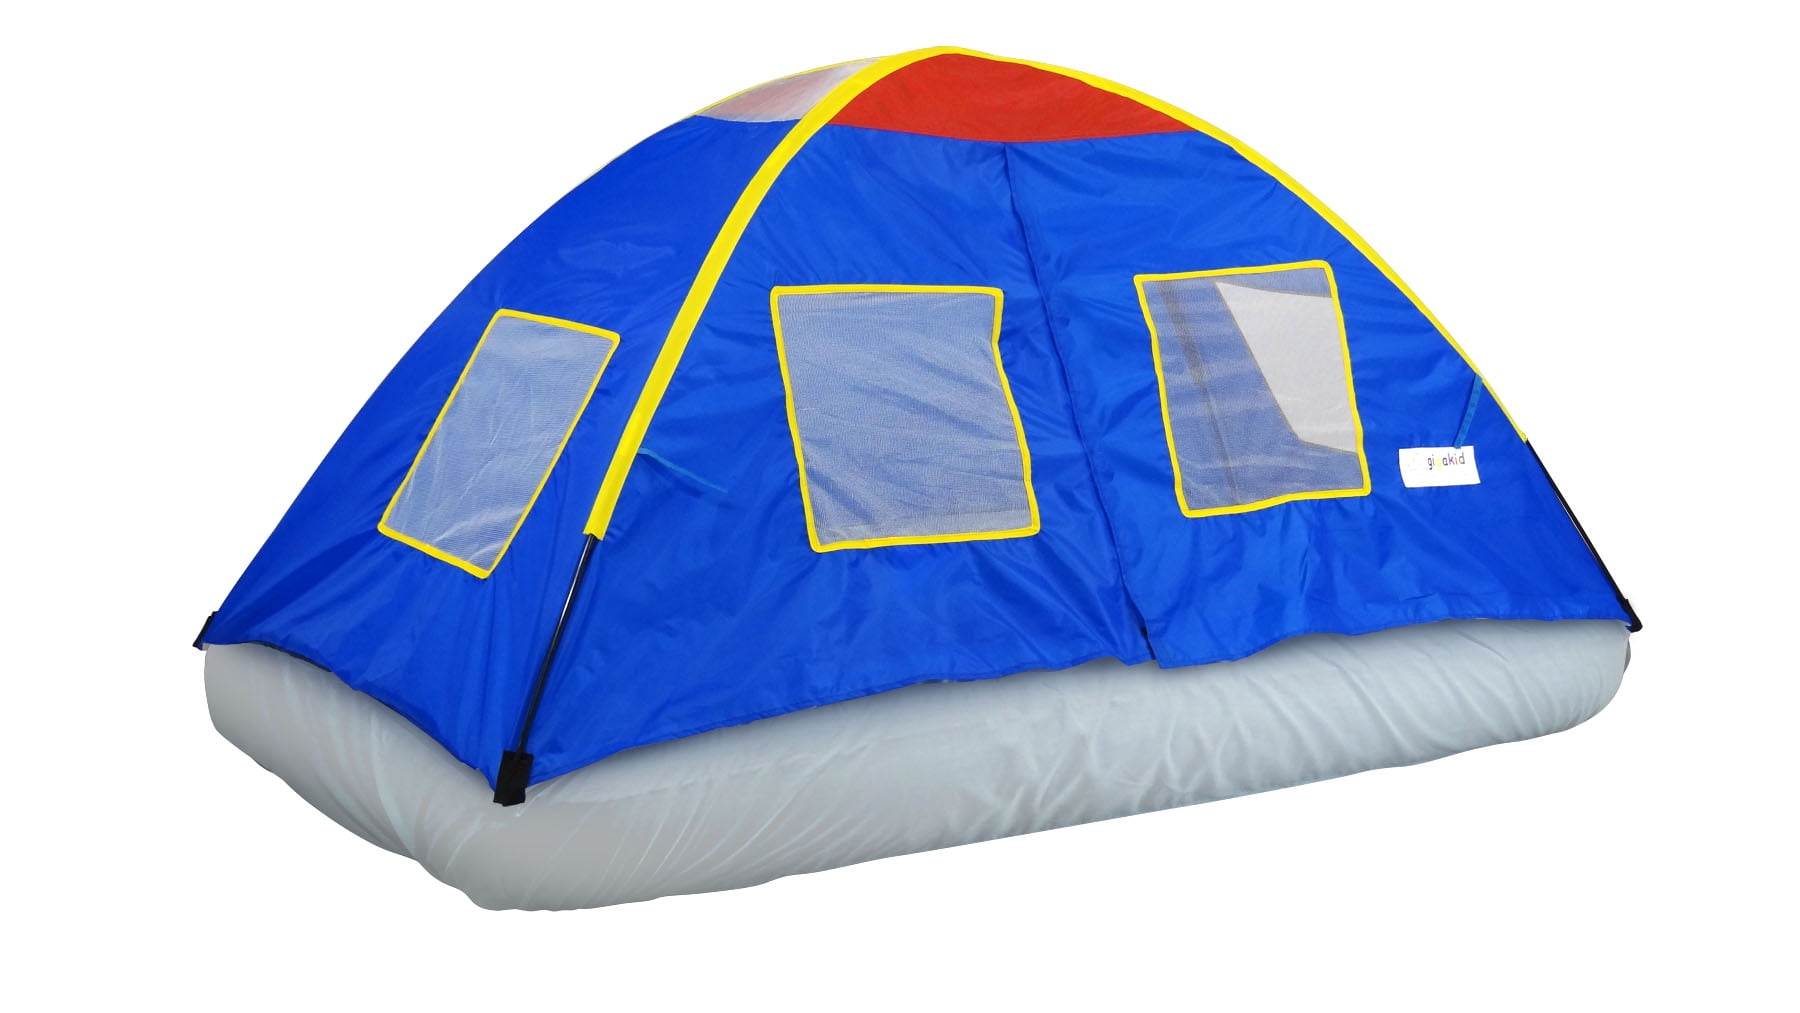 Pacific Play Tents 19721 Secret Castle Double Bed Tent for sale online